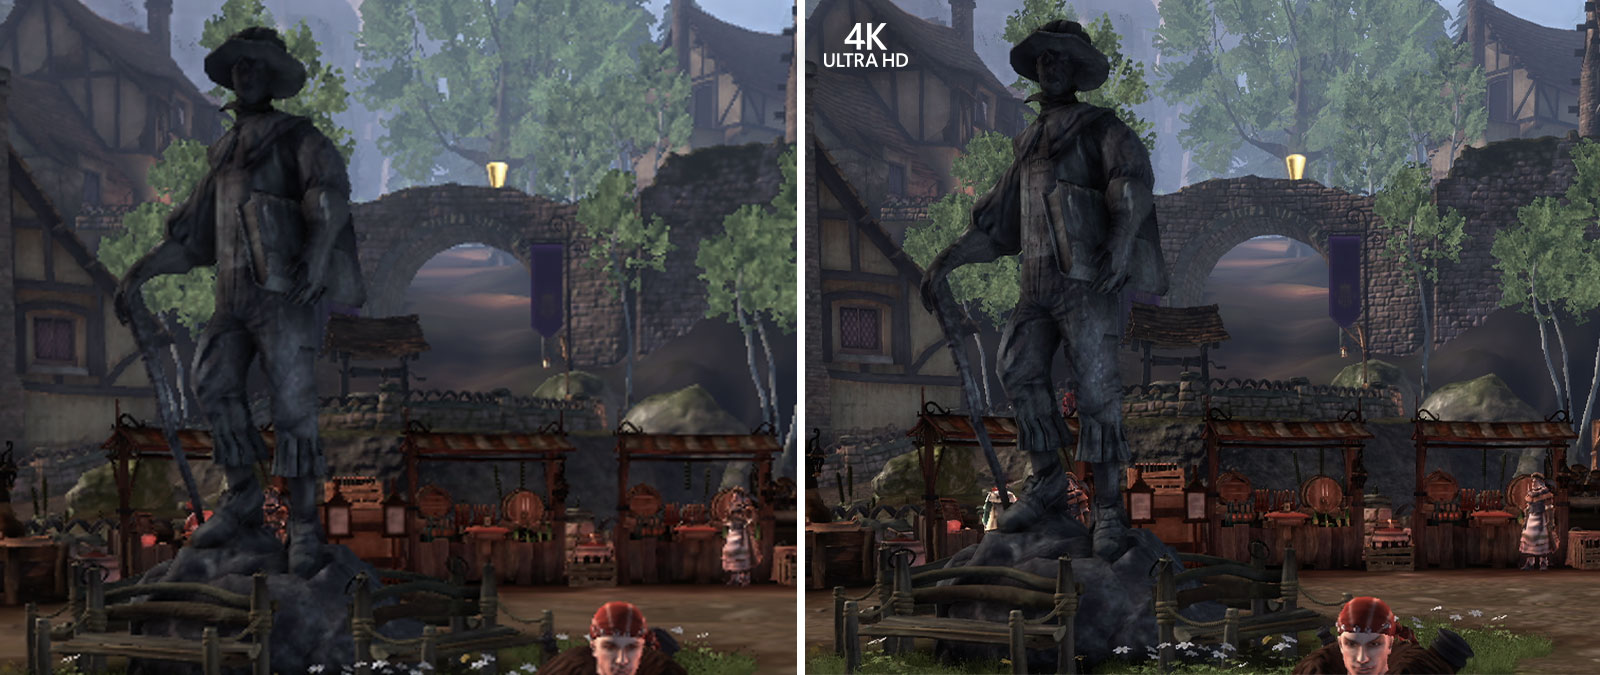 4K Ultra HD, srovnání obrázků ze hry Fable Anniversary přiblížených tak, aby byly vidět detaily na pozadí.